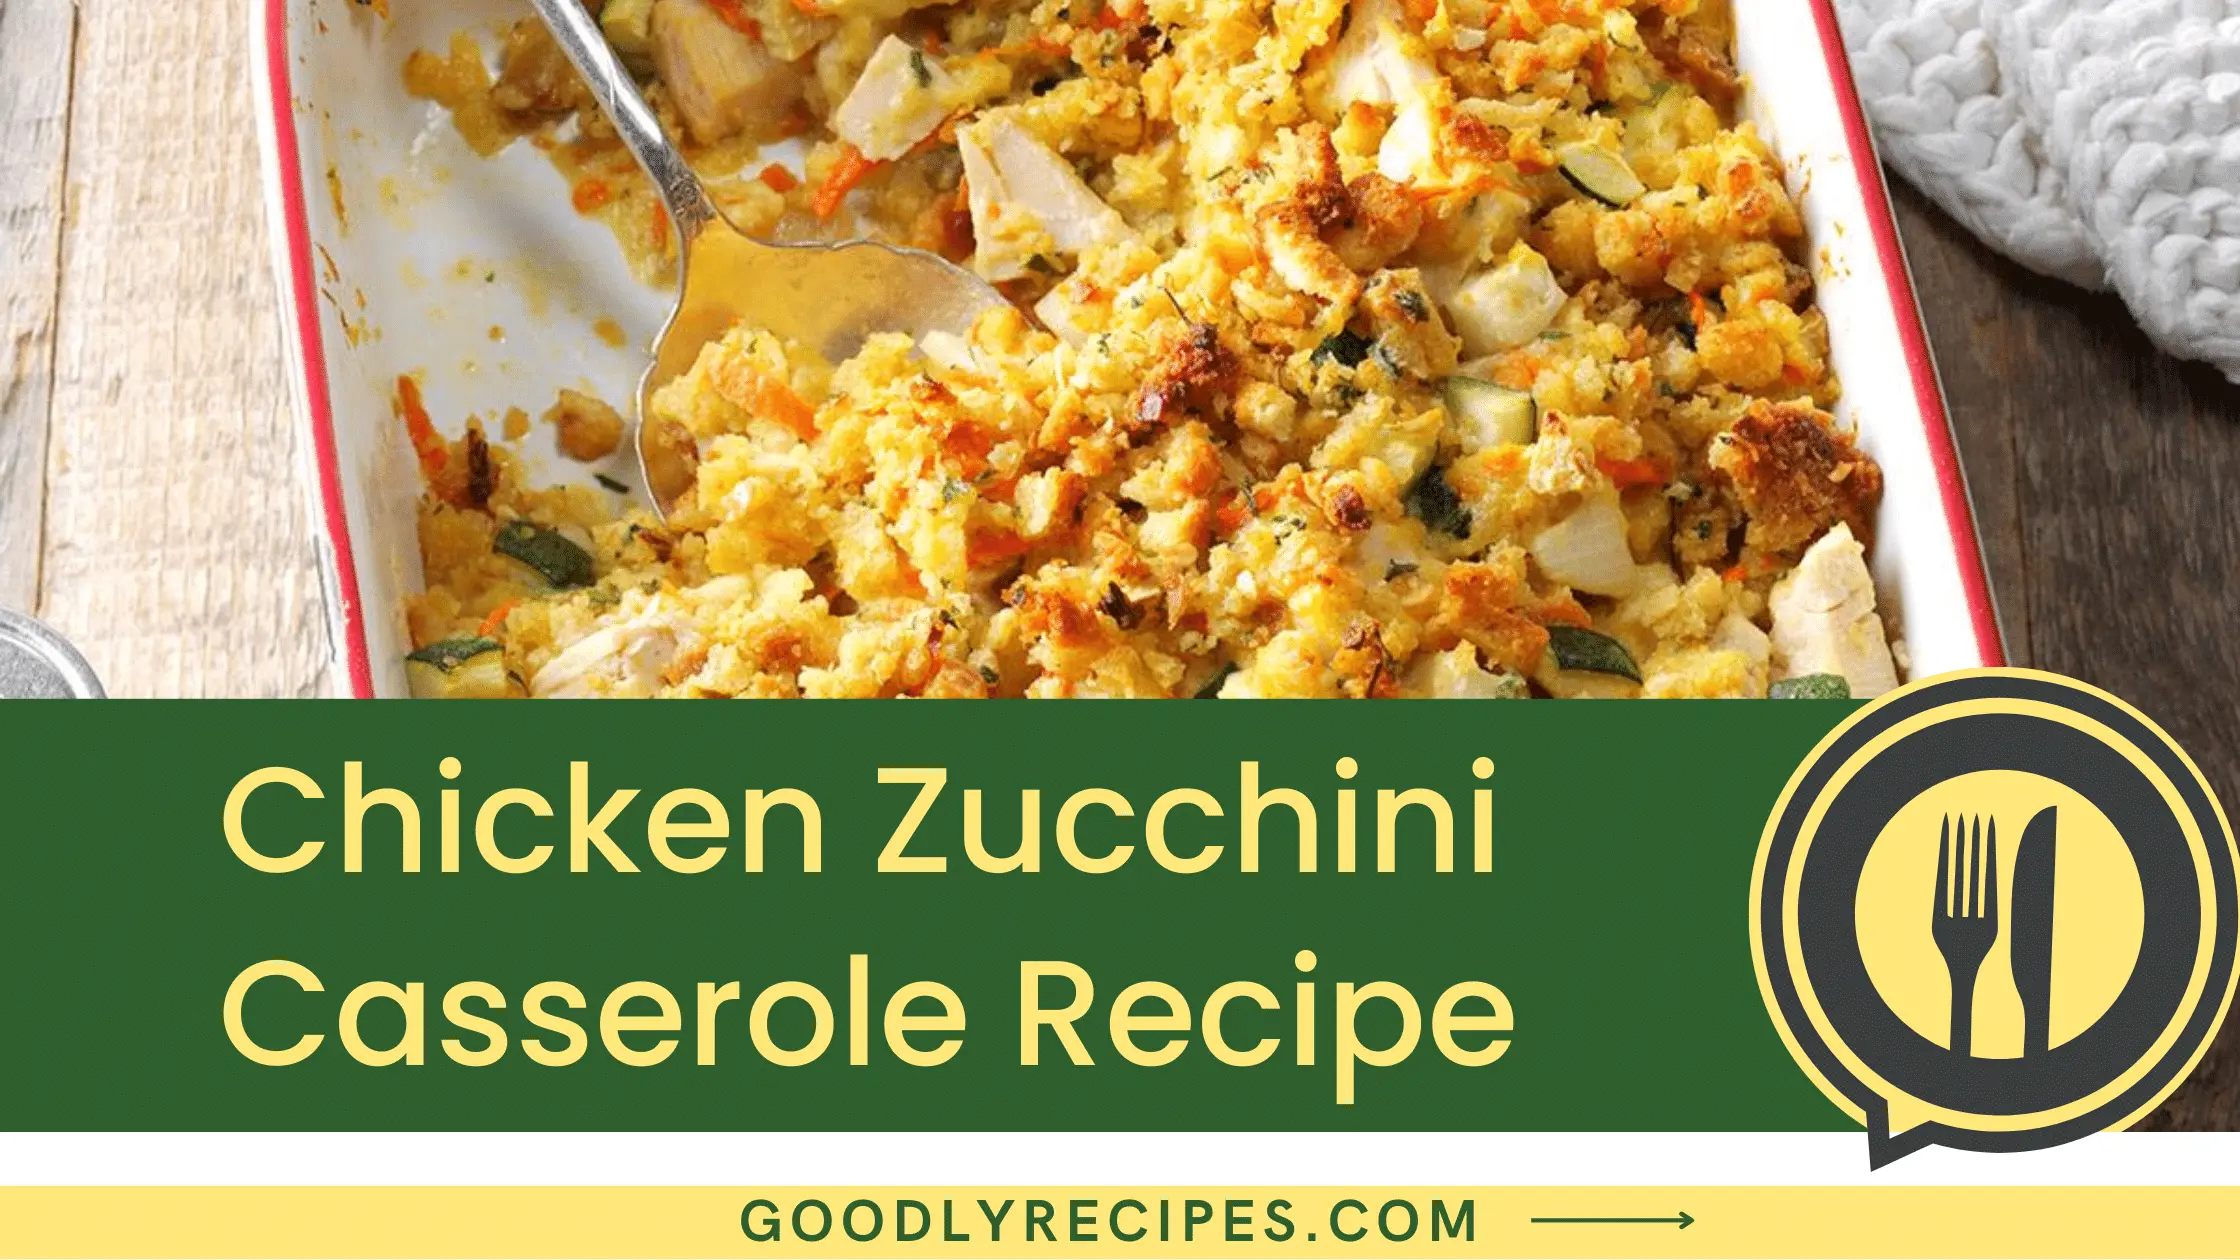 Chicken Zucchini Casserole Recipe